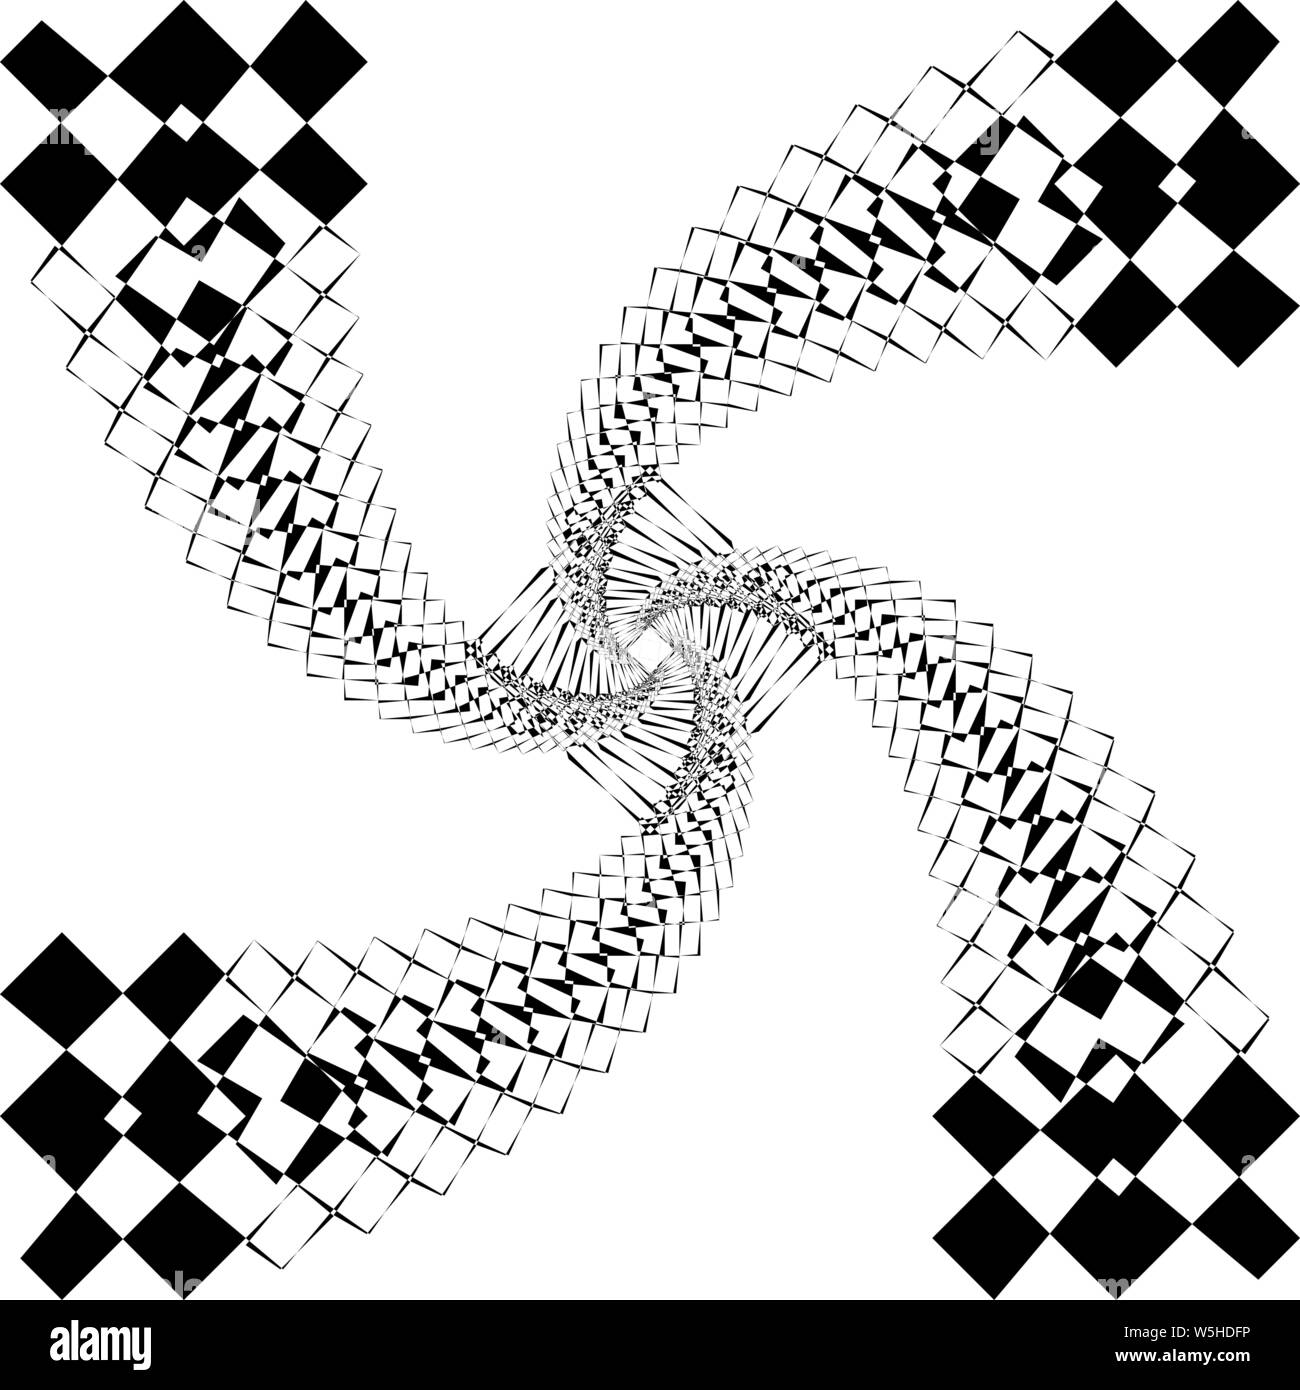 Spining kite composer quatre files d'arabesque comme inspiré par strukture abstract art déco coupe illustration sur fond transparent Illustration de Vecteur